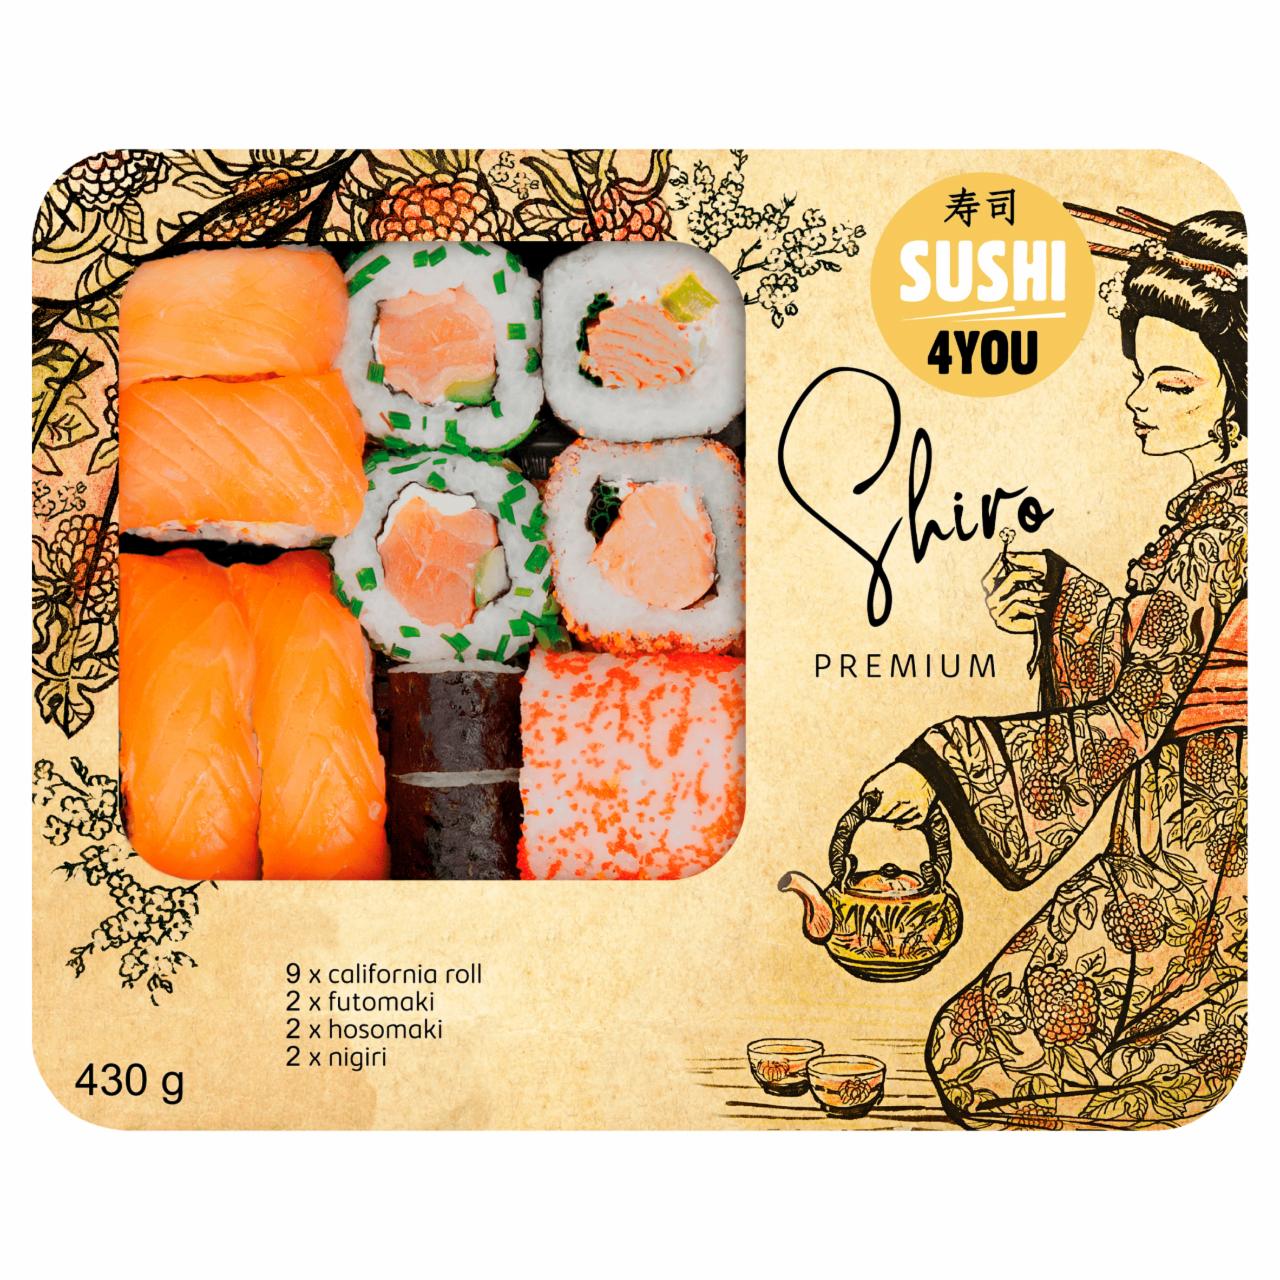 Zdjęcia - Premium Sushi Shiro 430 g Sushi4You